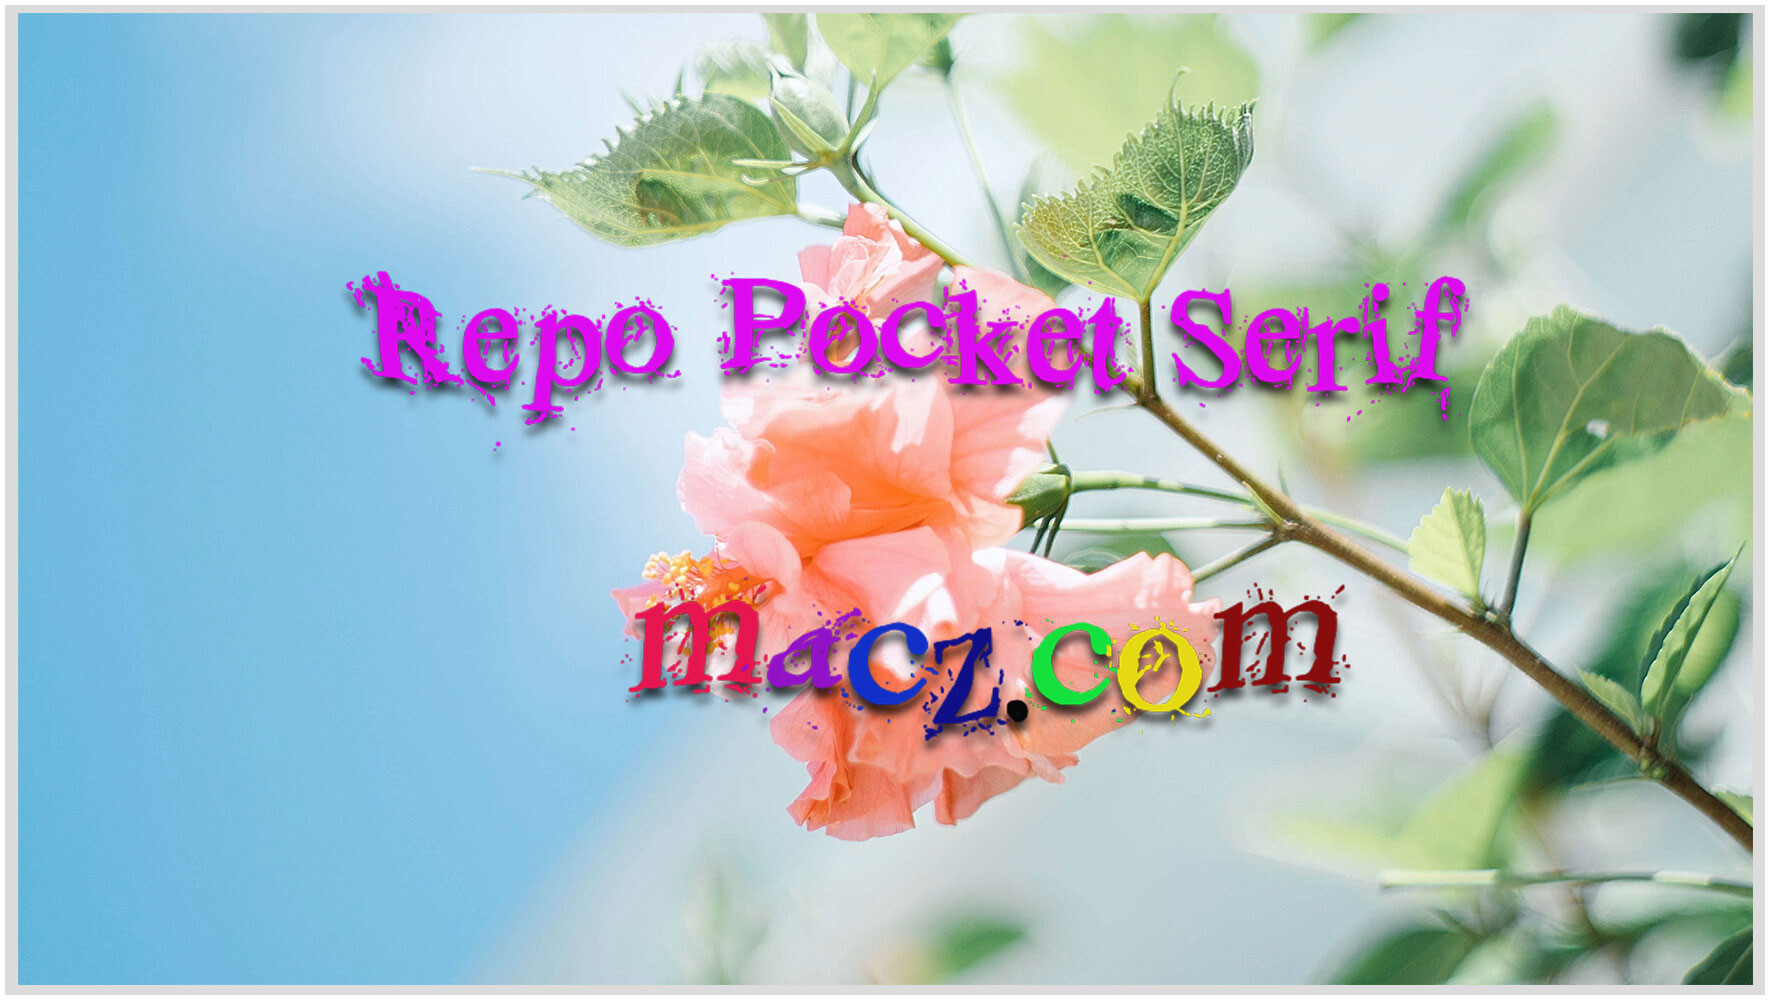 独特袖珍手工衬线字体Repo Pocket Serif